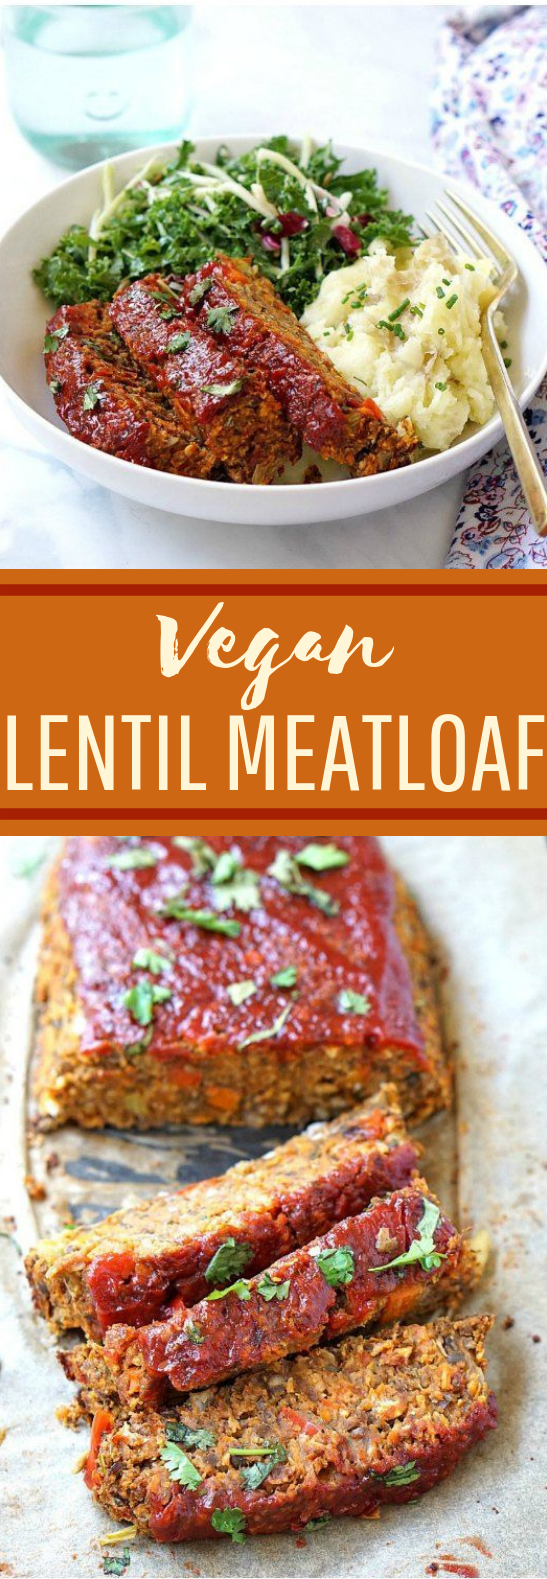 Vegan Lentil Loaf #dinner #meatless